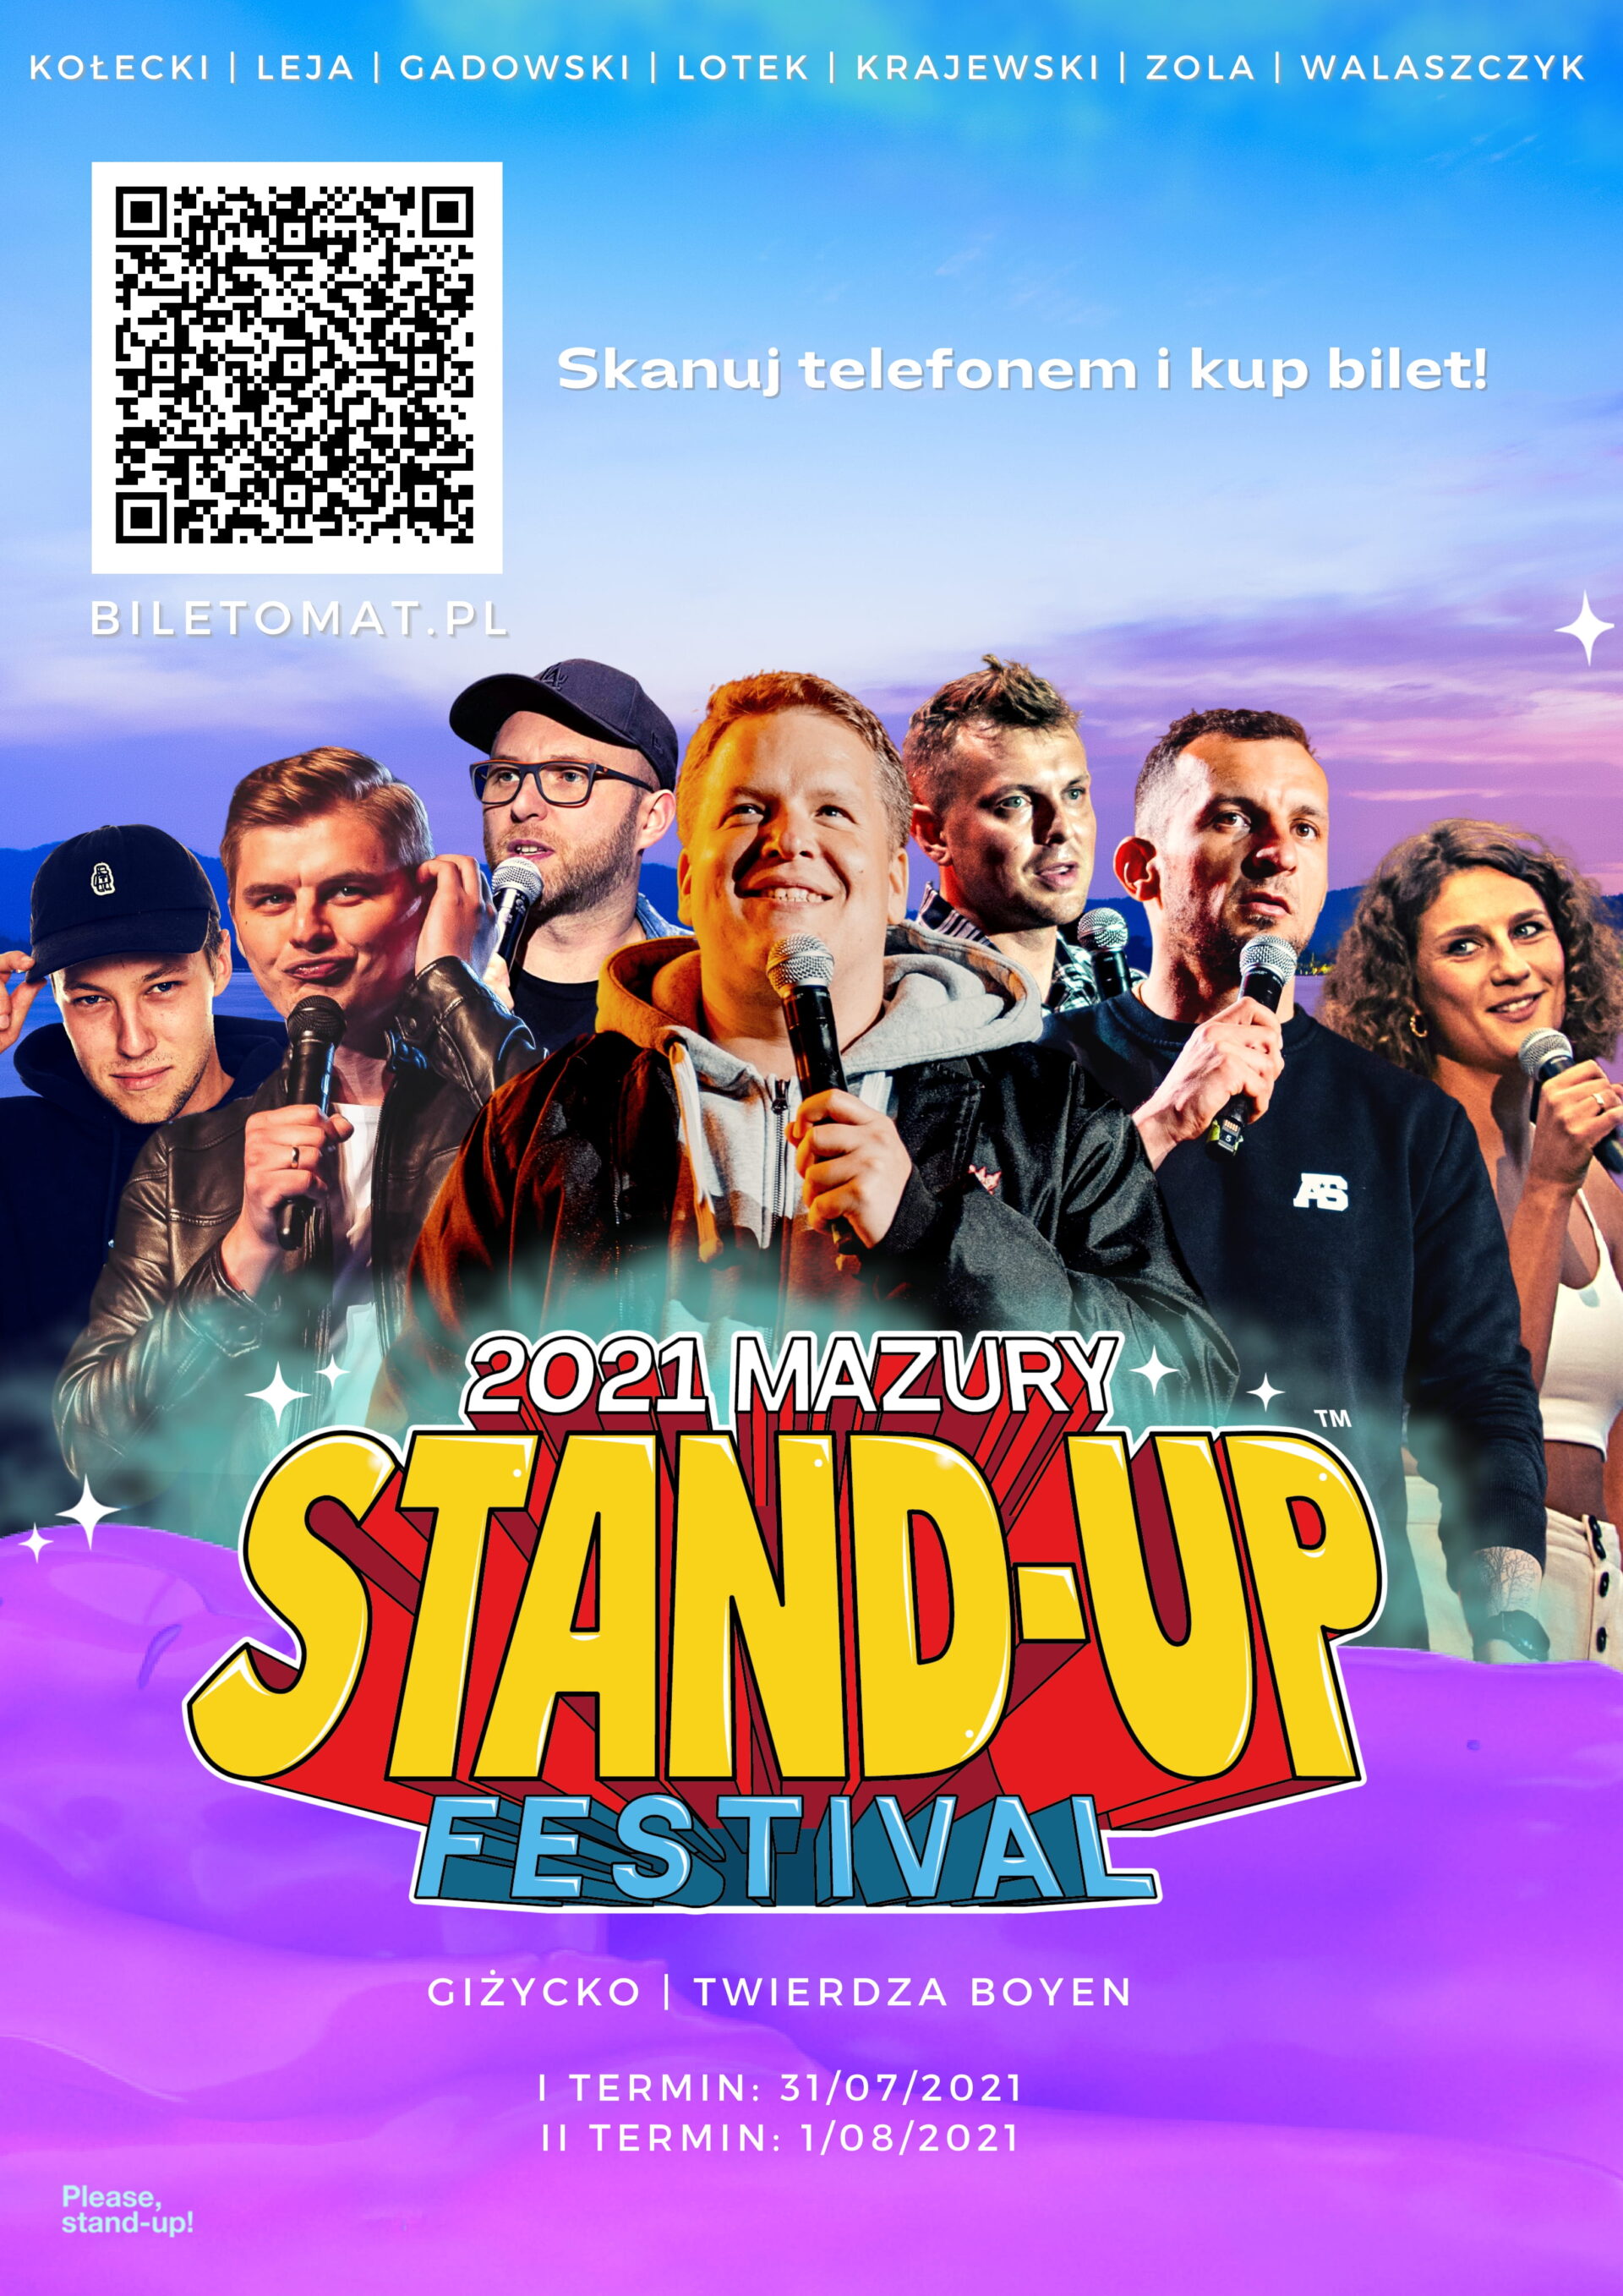 Mazury Standup Festival 2021 już w ten weekend! Głosy Warmii i Mazur